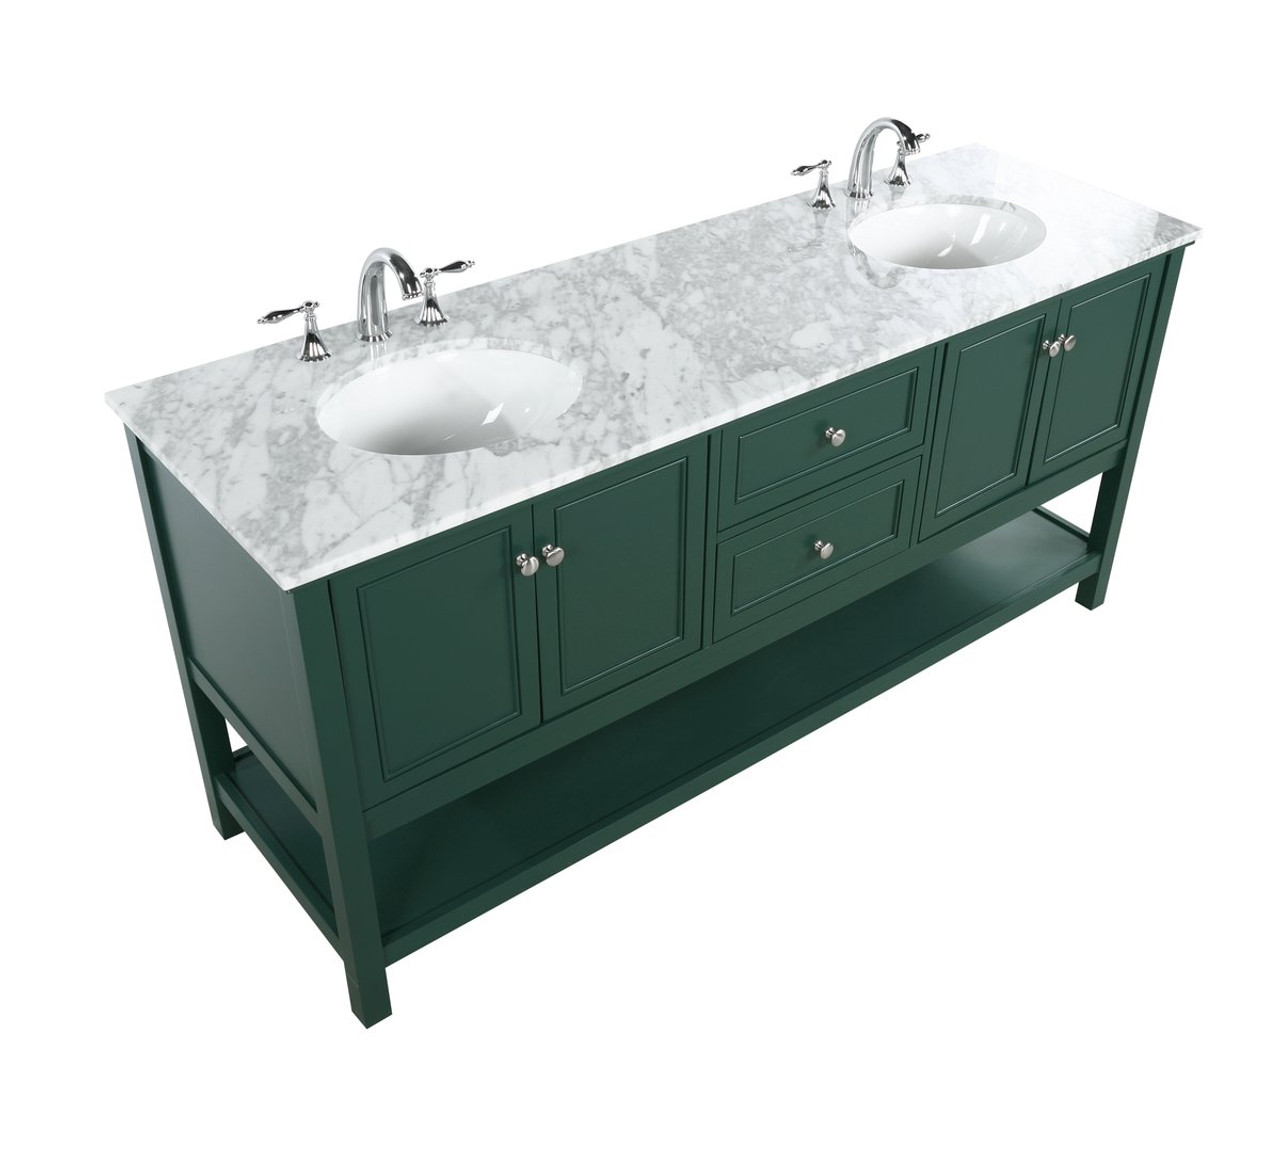 Elegant Decor VF27072DGN 72 inch double bathroom vanity in green